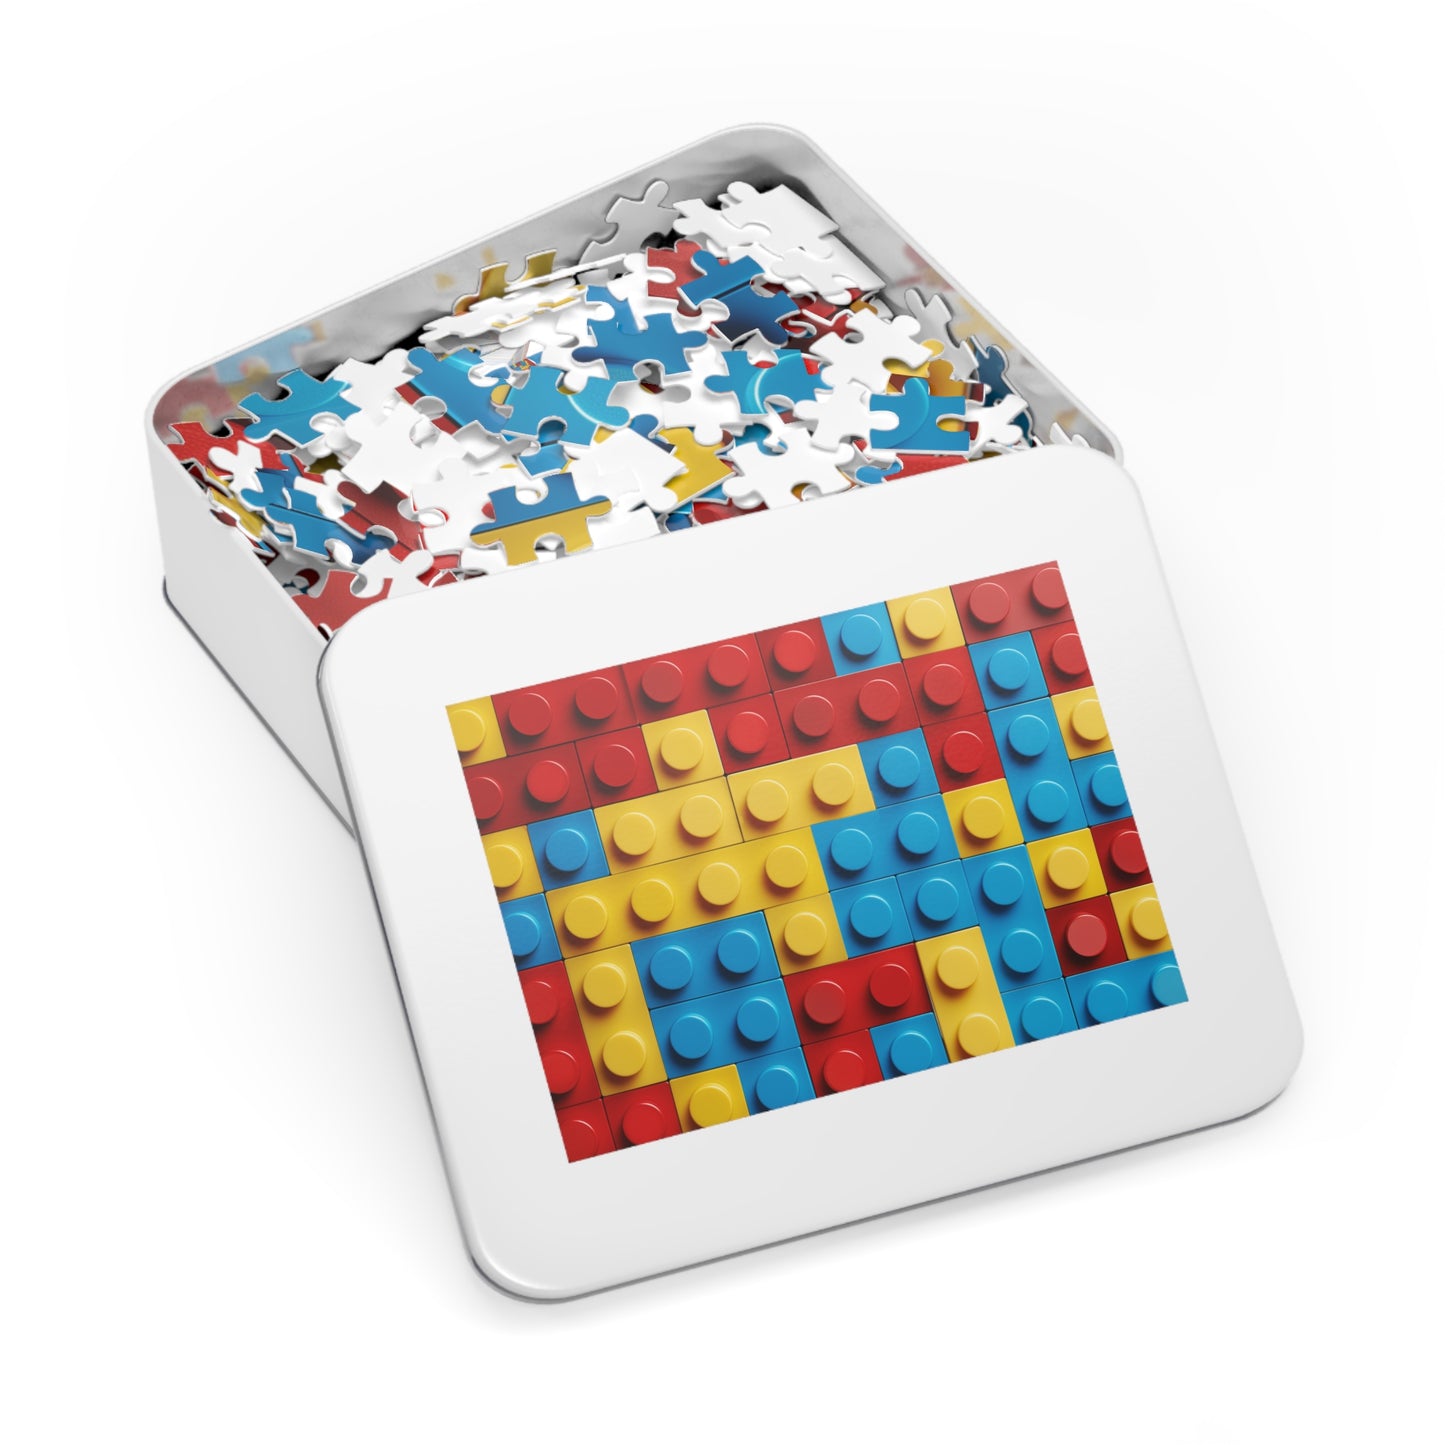 Legos Jigsaw Puzzle (30, 110, 252, 500,1000-Piece)